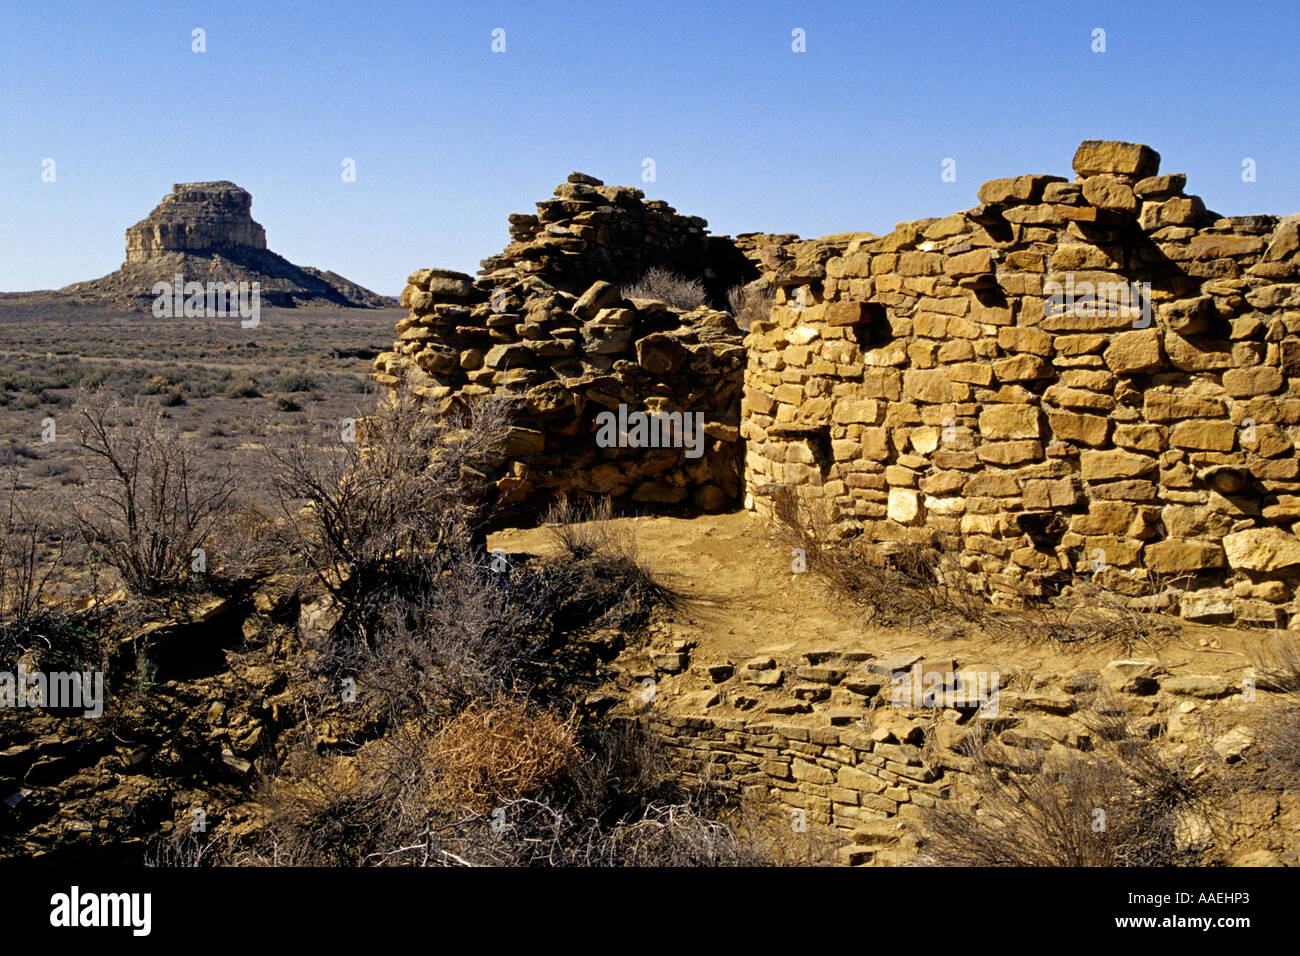 Una Vida Fajada Butte ist ein wichtiger Meilenstein im Chaco Kultur National Historical Park, Chaco Canyon, New Mexico, Vereinigte Staaten Stockfoto